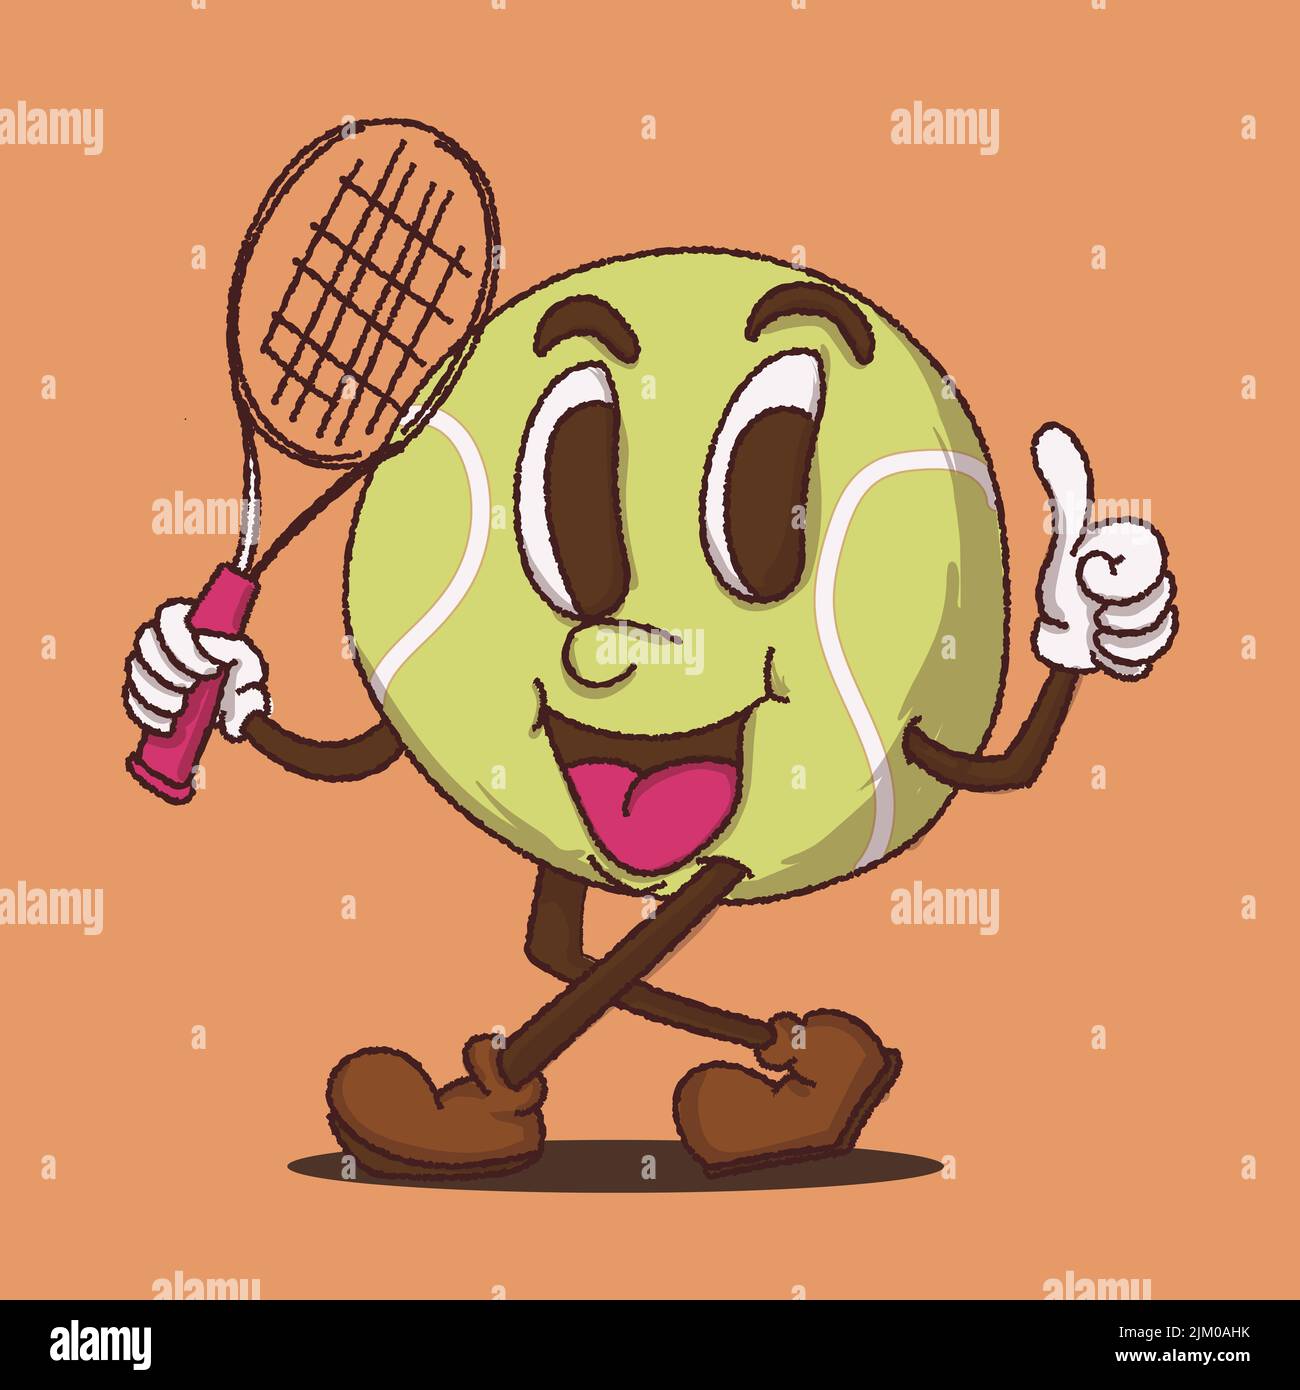 Tennis Ball Walking Maskottchen Vektor-Illustration mit Gesicht. Für Vintage Retro-Logos und Branding. Funky Vintage-Stil Cartoon Gesicht Vektor-Illustration Stock Vektor